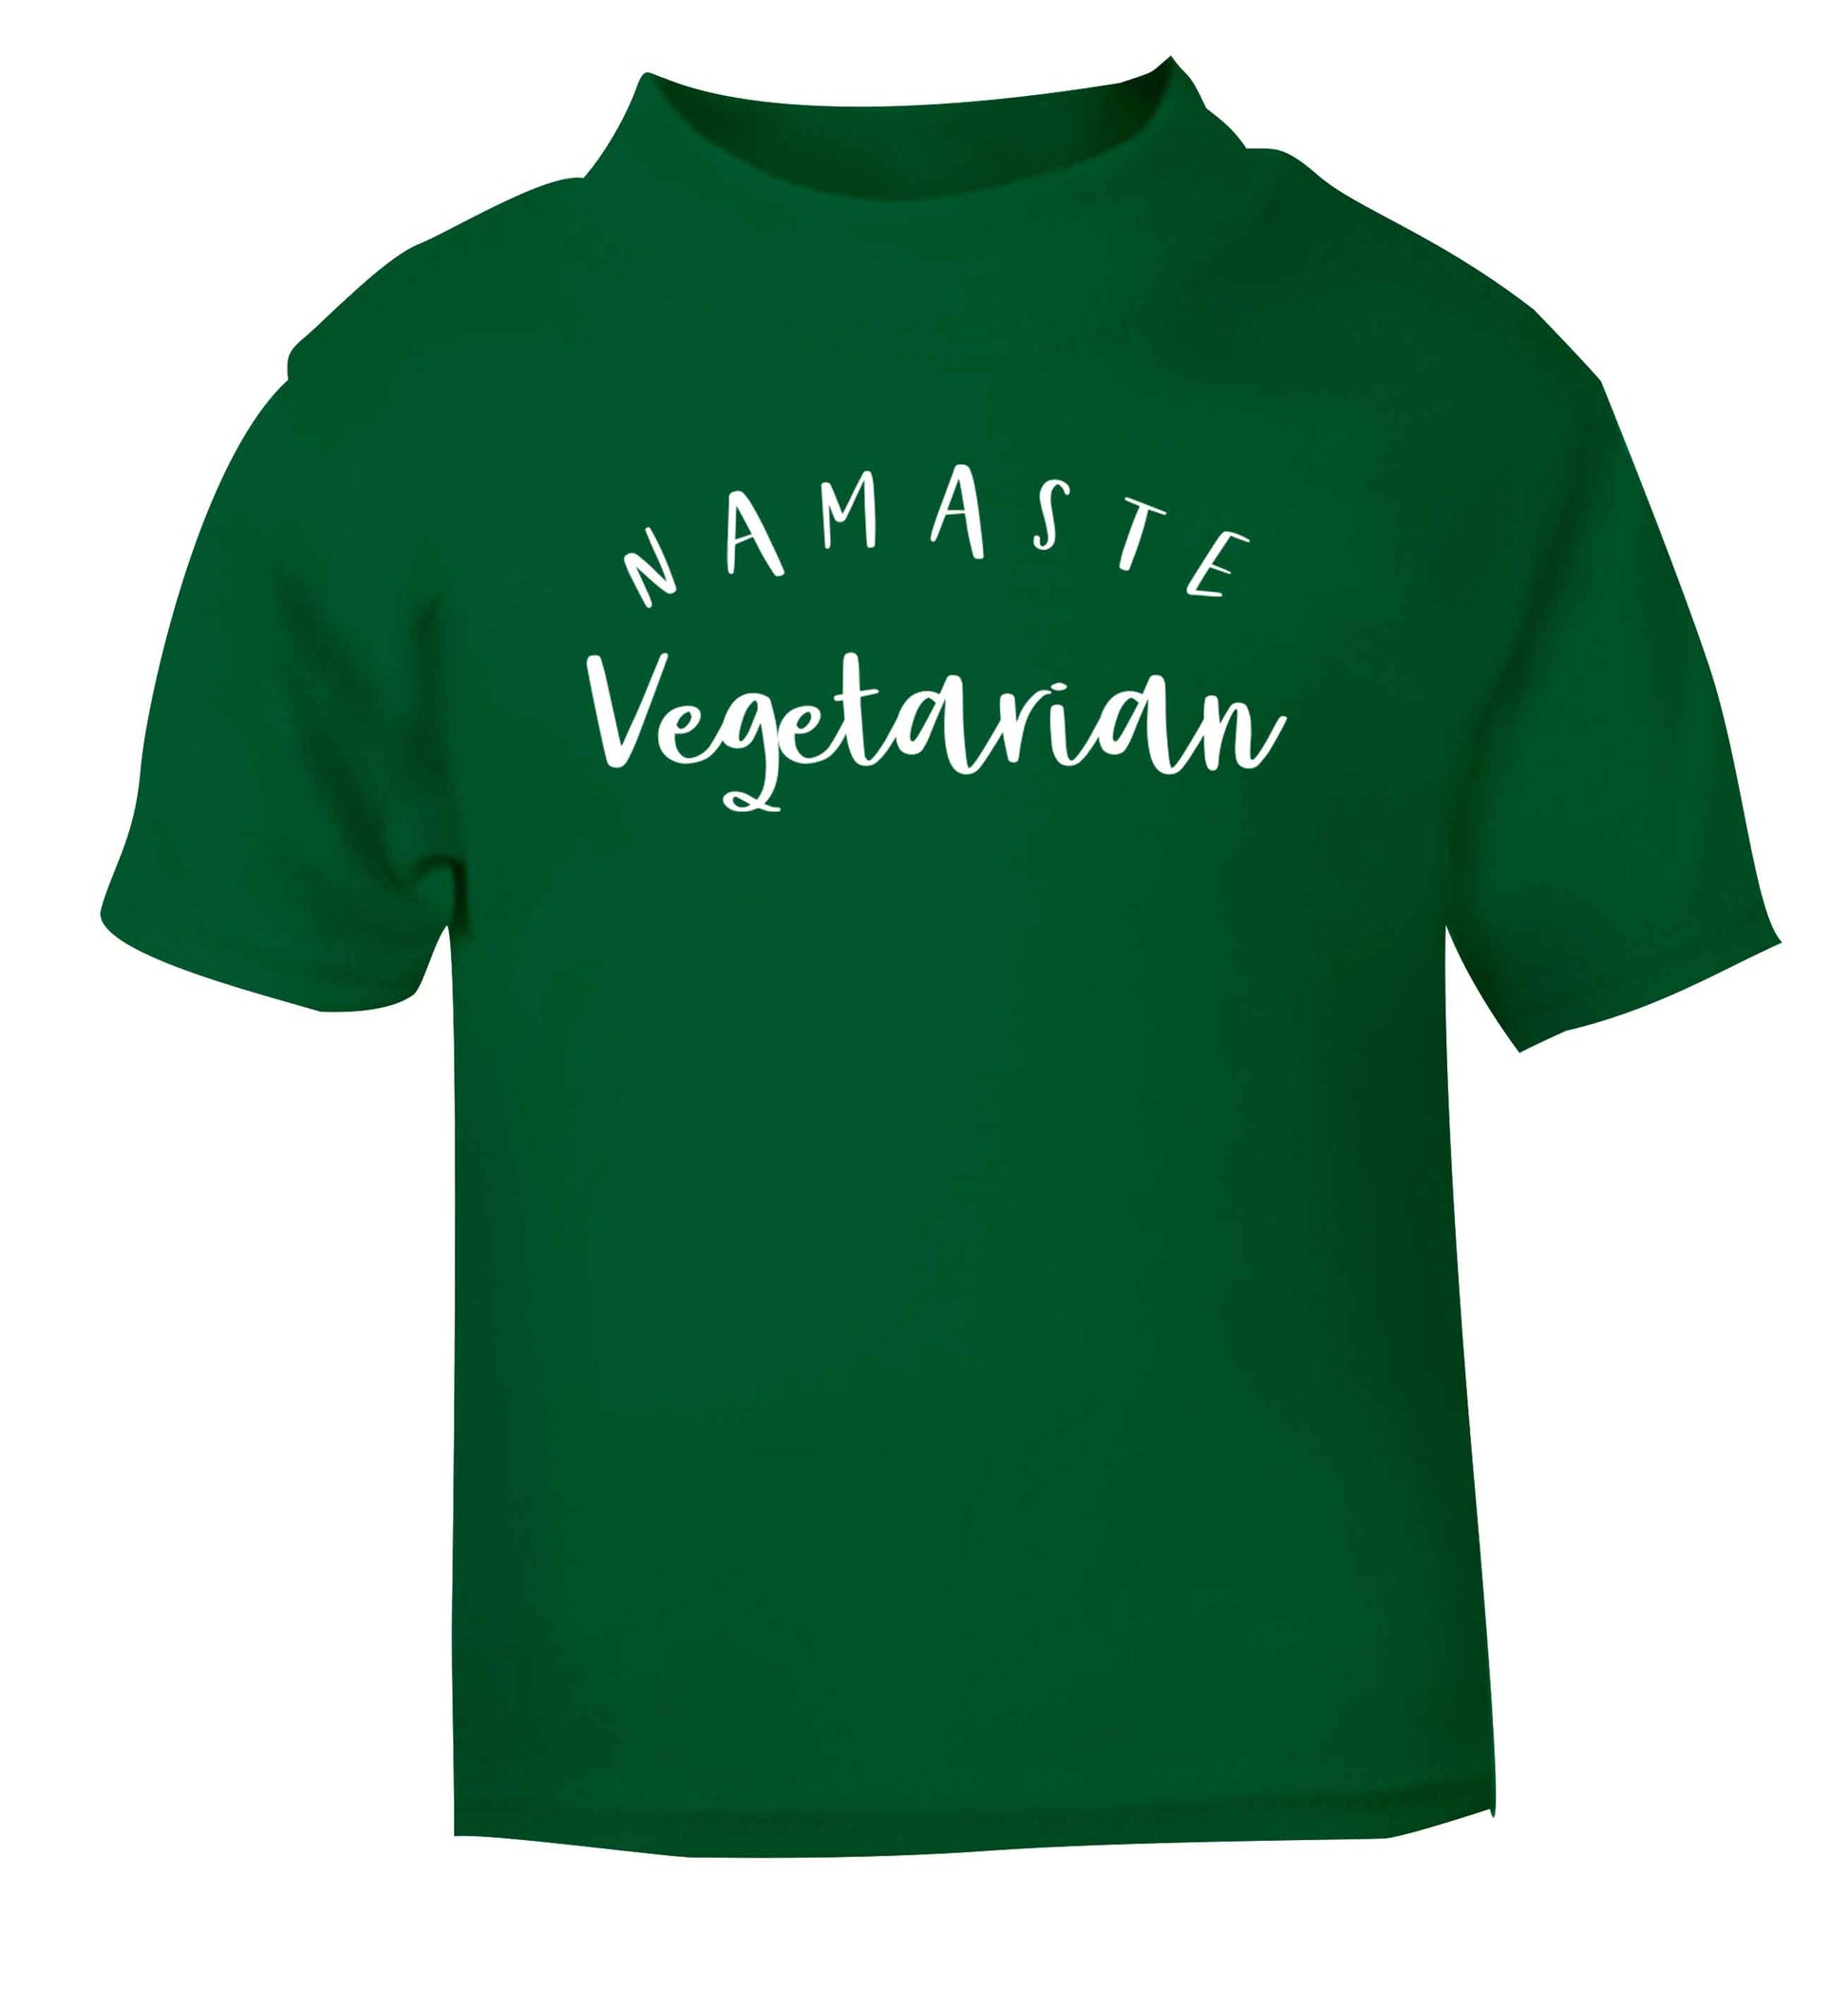 Namaste vegetarian green Baby Toddler Tshirt 2 Years